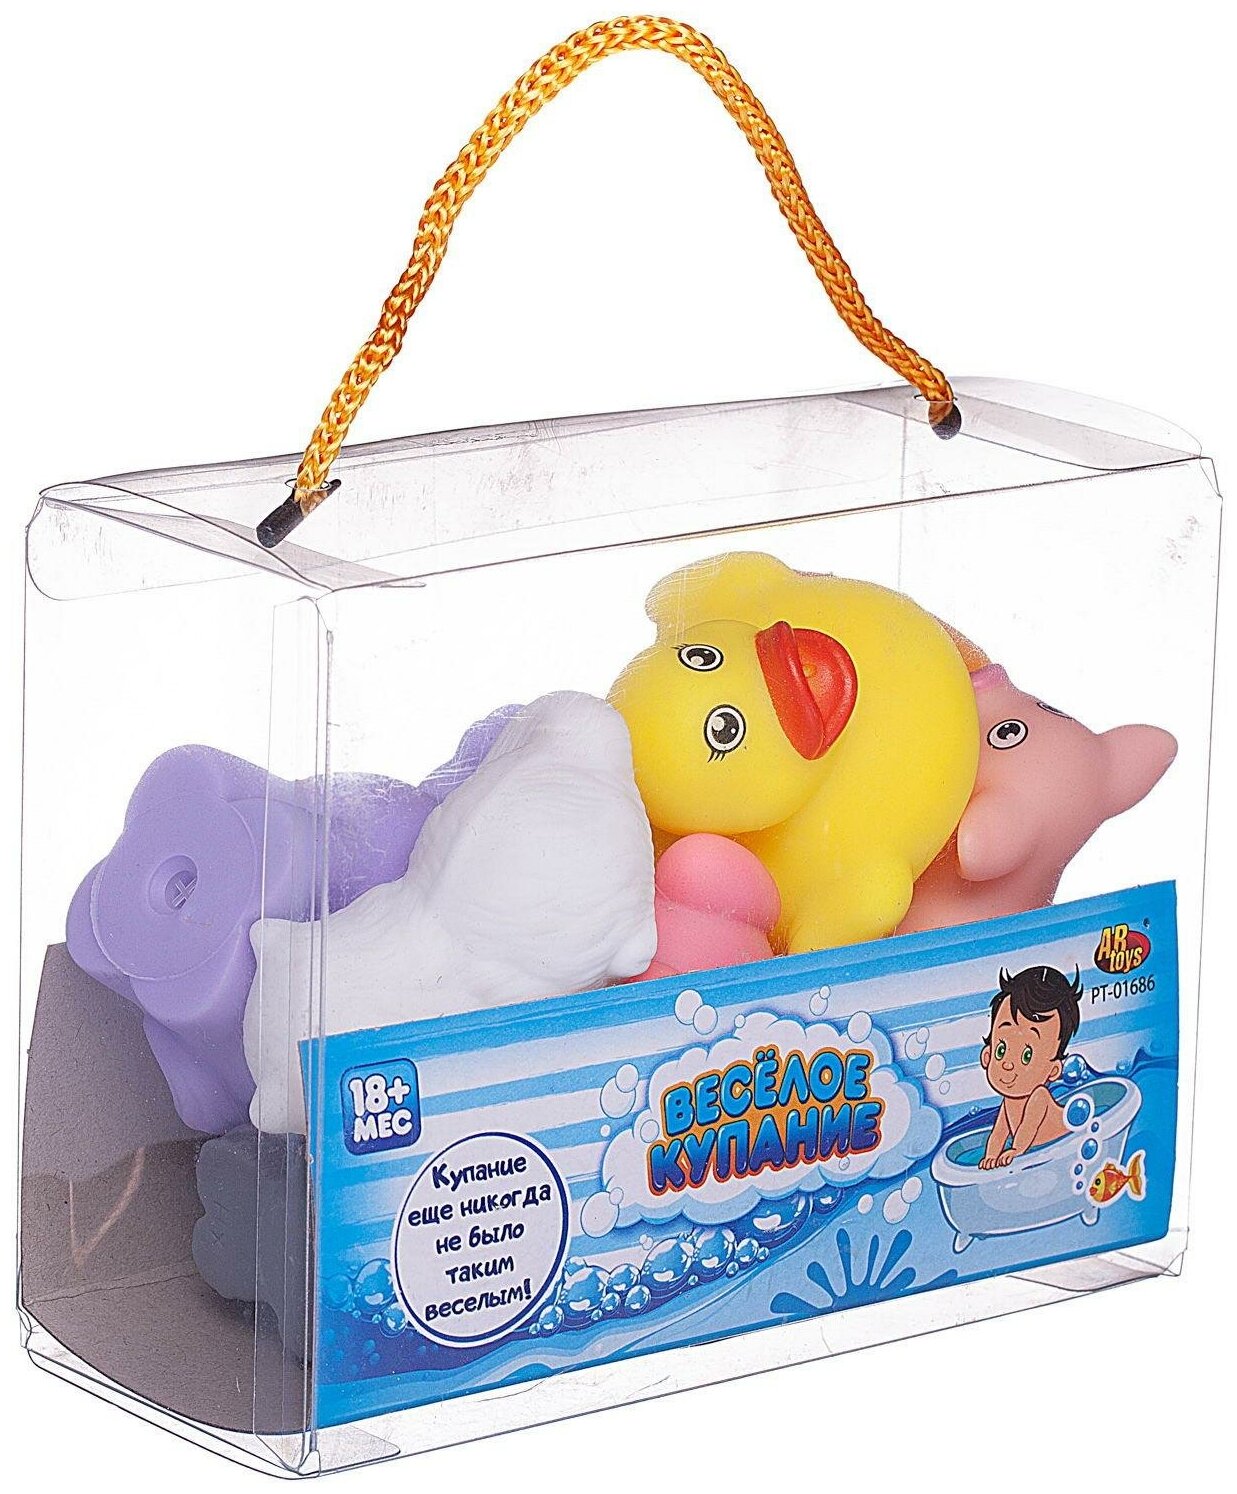 Набор резиновых игрушек для ванной Abtoys Веселое купание 8 предметов (набор 2), в сумке PT-01686